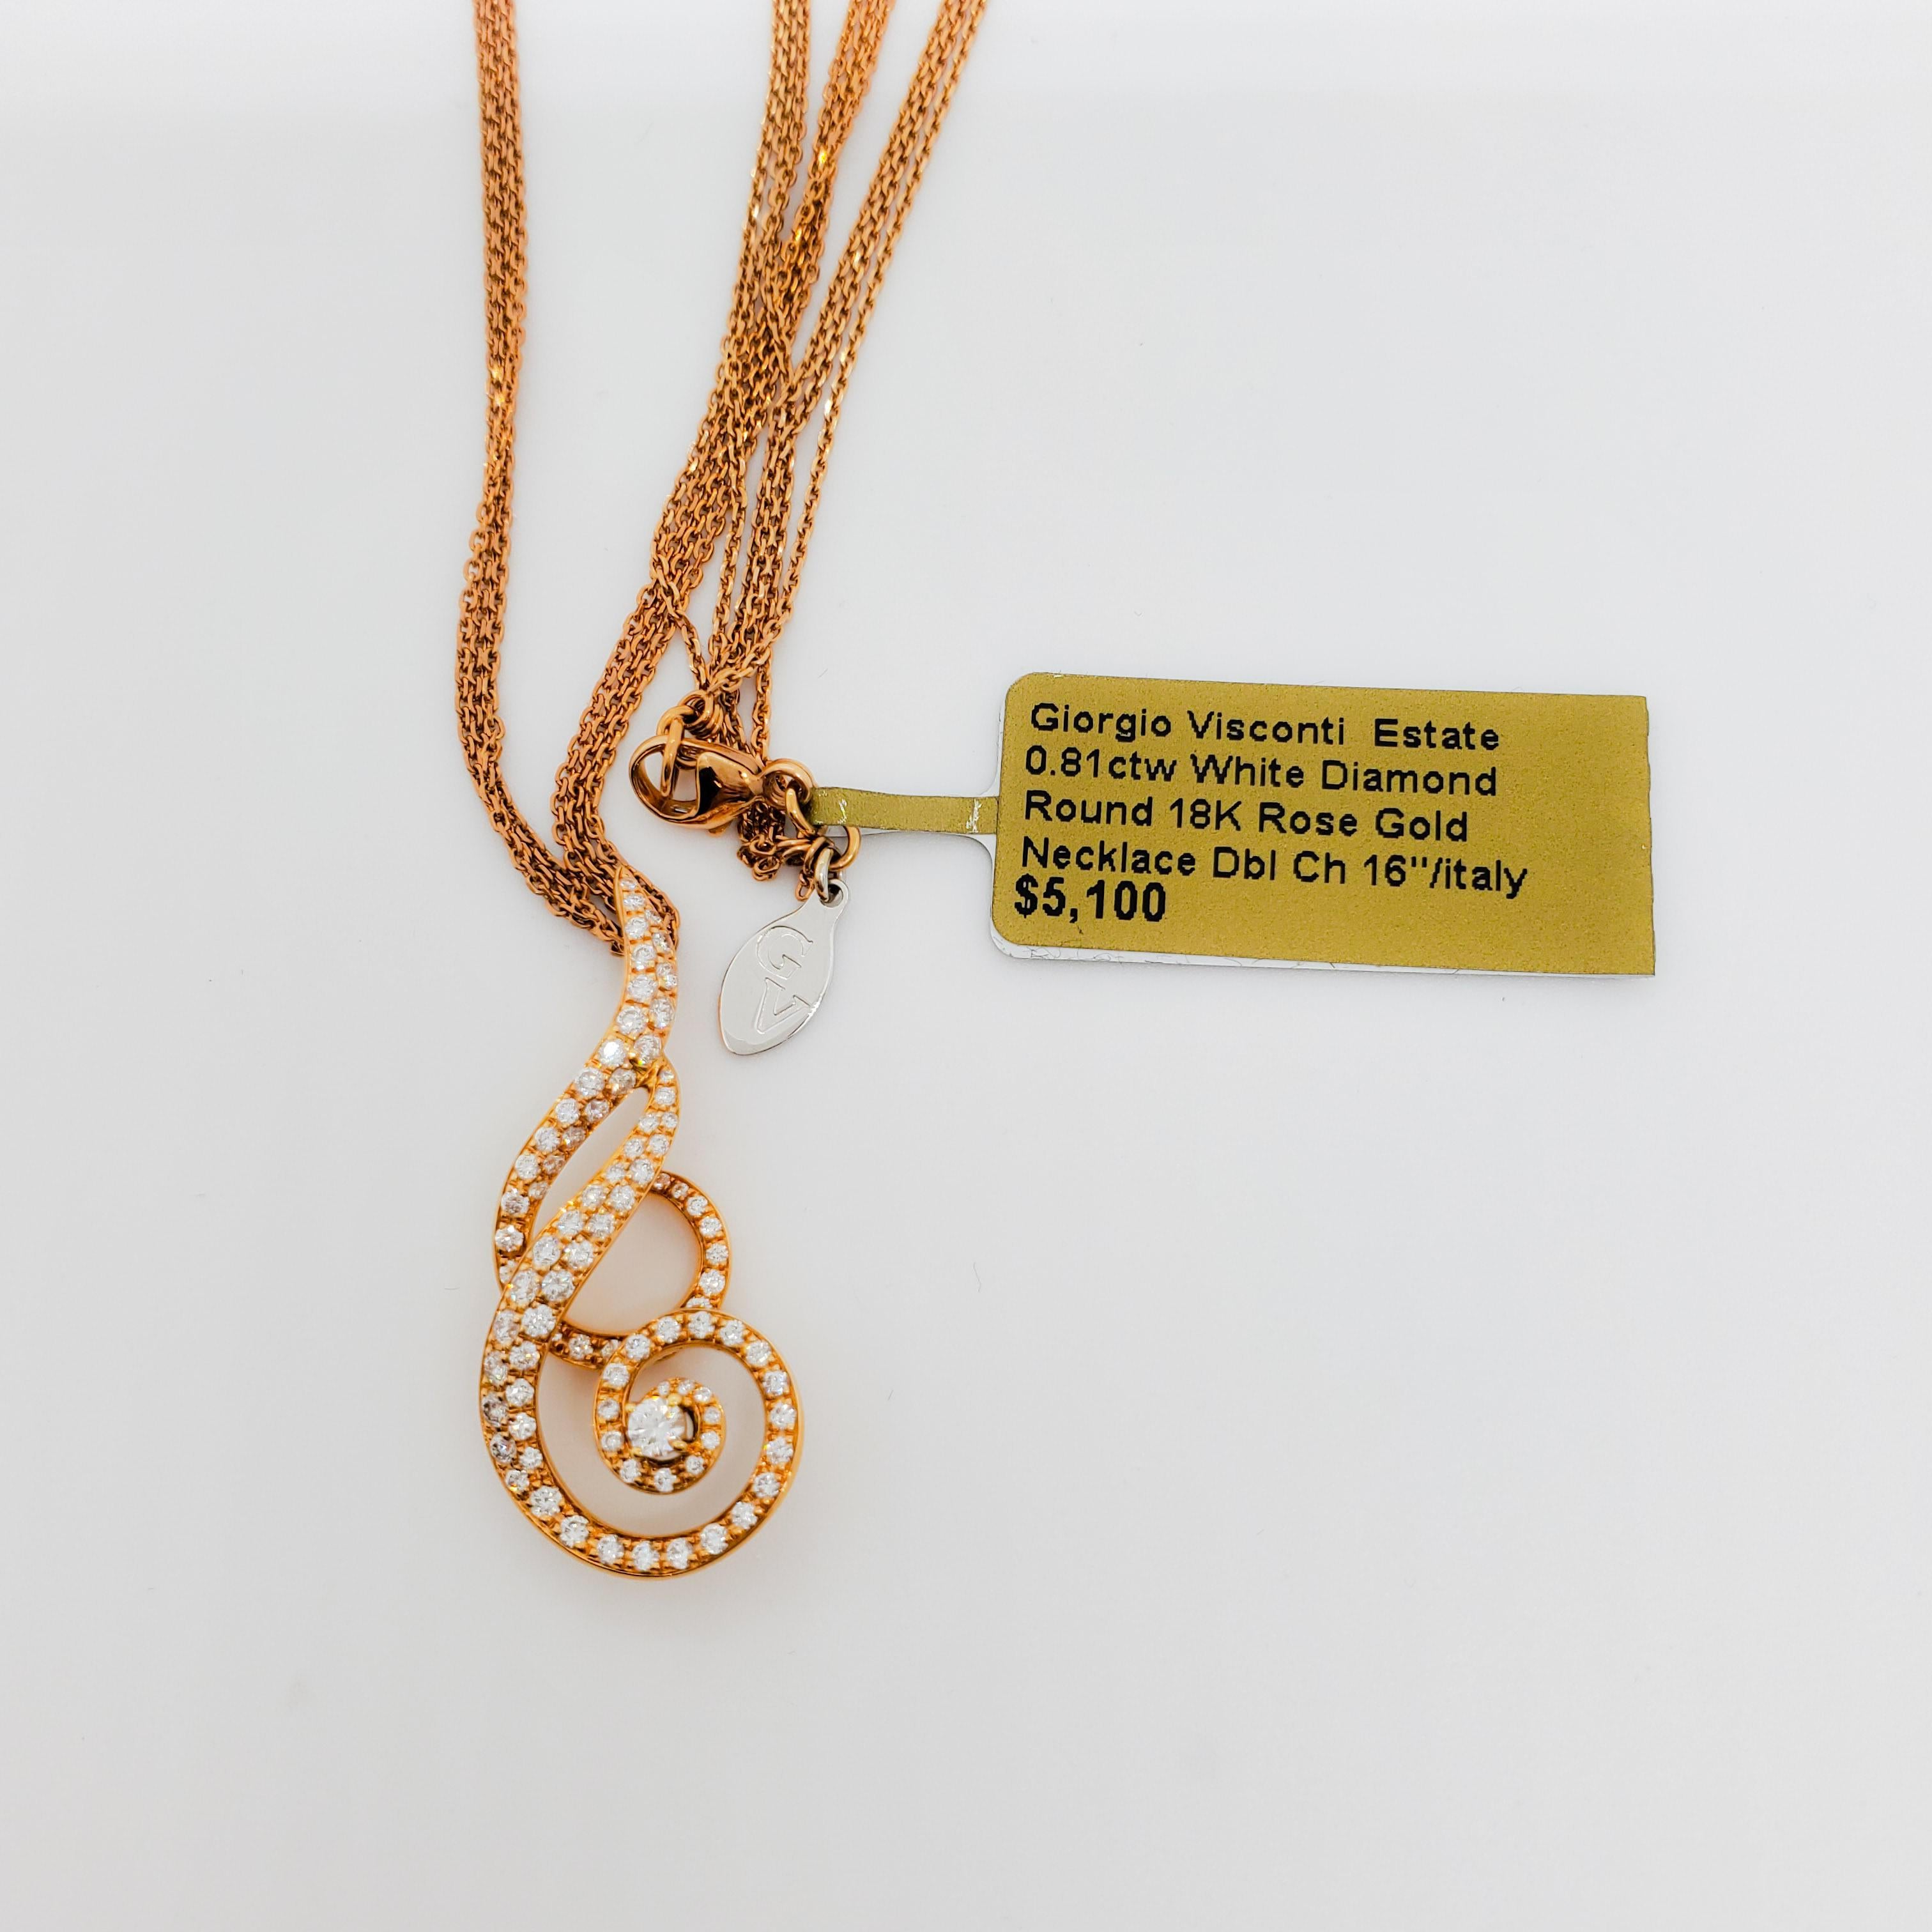 Estate Giorgio Visconti Pendant Necklace in 18k Rose Gold For Sale 3